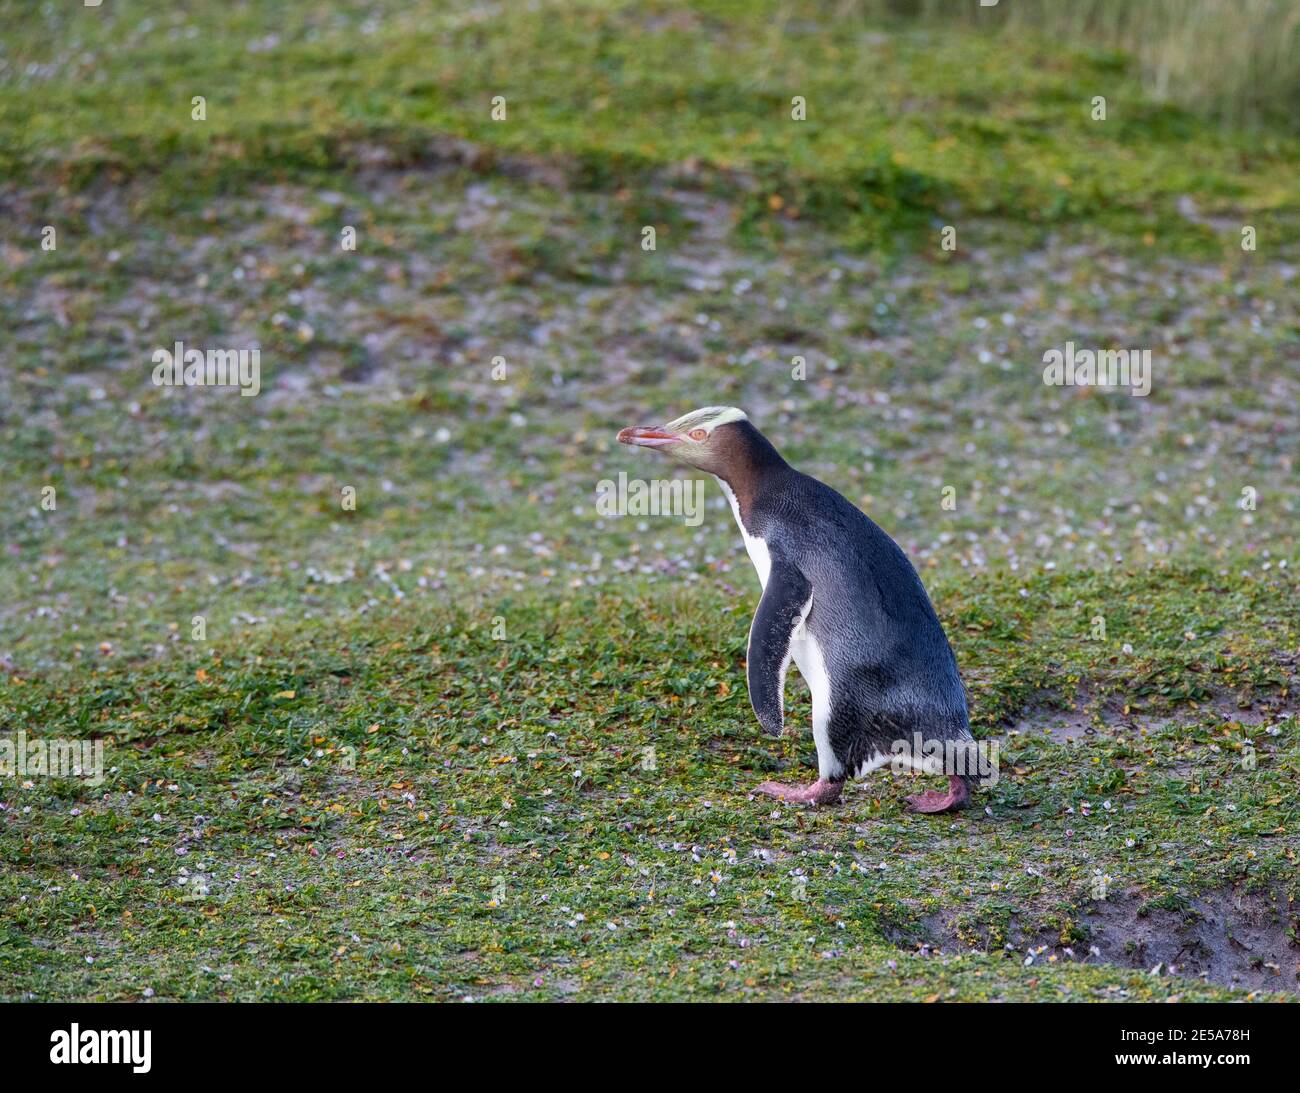 Pinguino dagli occhi gialli, Hoiho (antipodi Megadyptes), camminando su un pendio coperto d'erba lungo la spiaggia, la Nuova Zelanda, le isole di Auckland, l'isola di Enderby Foto Stock